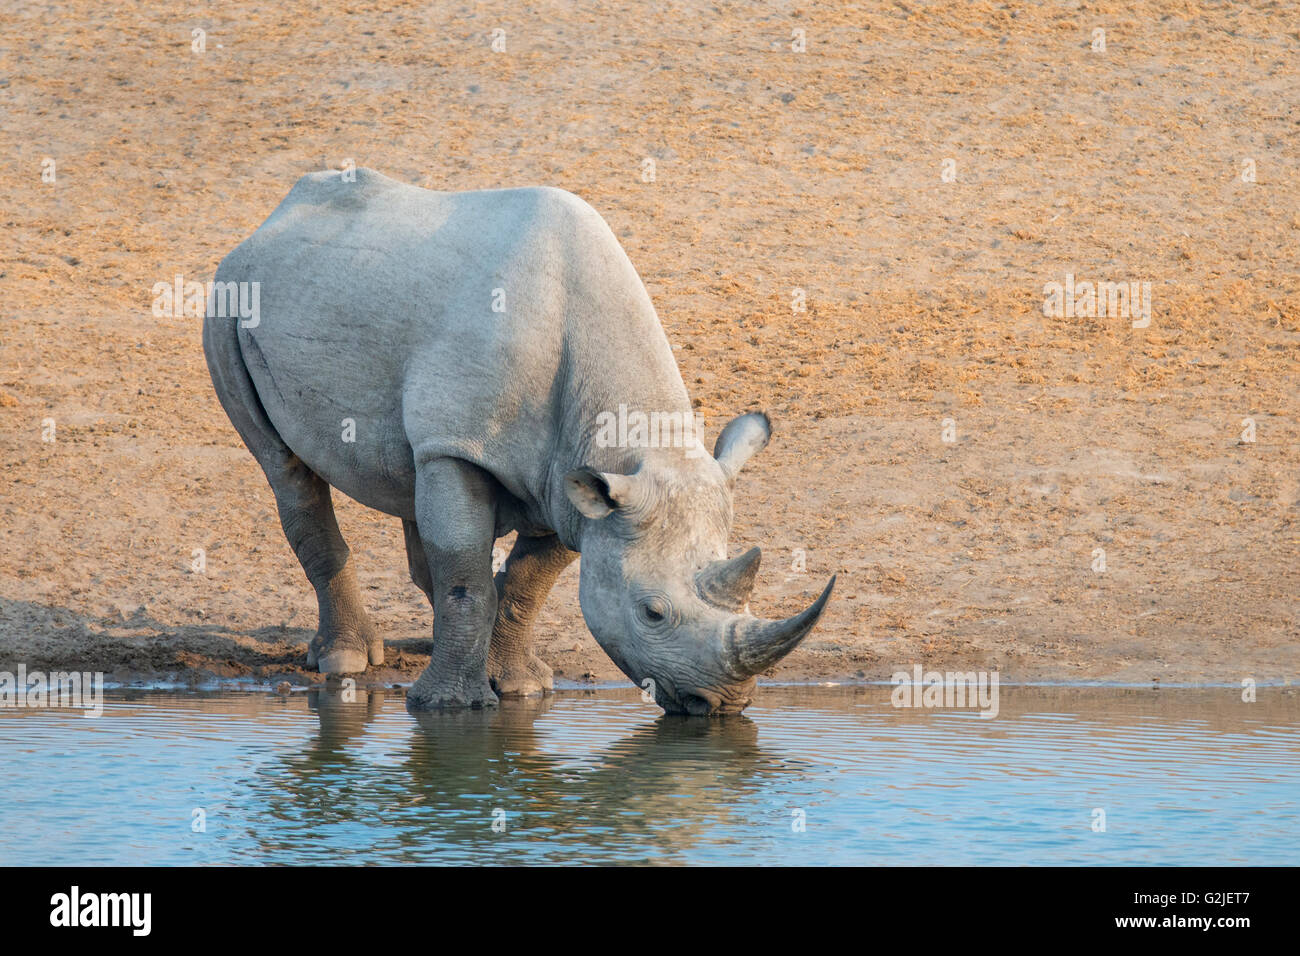 Endangered Black rhinoceros (Diceros bicornis), Etosha National Park, Namibia, southern Africa Stock Photo